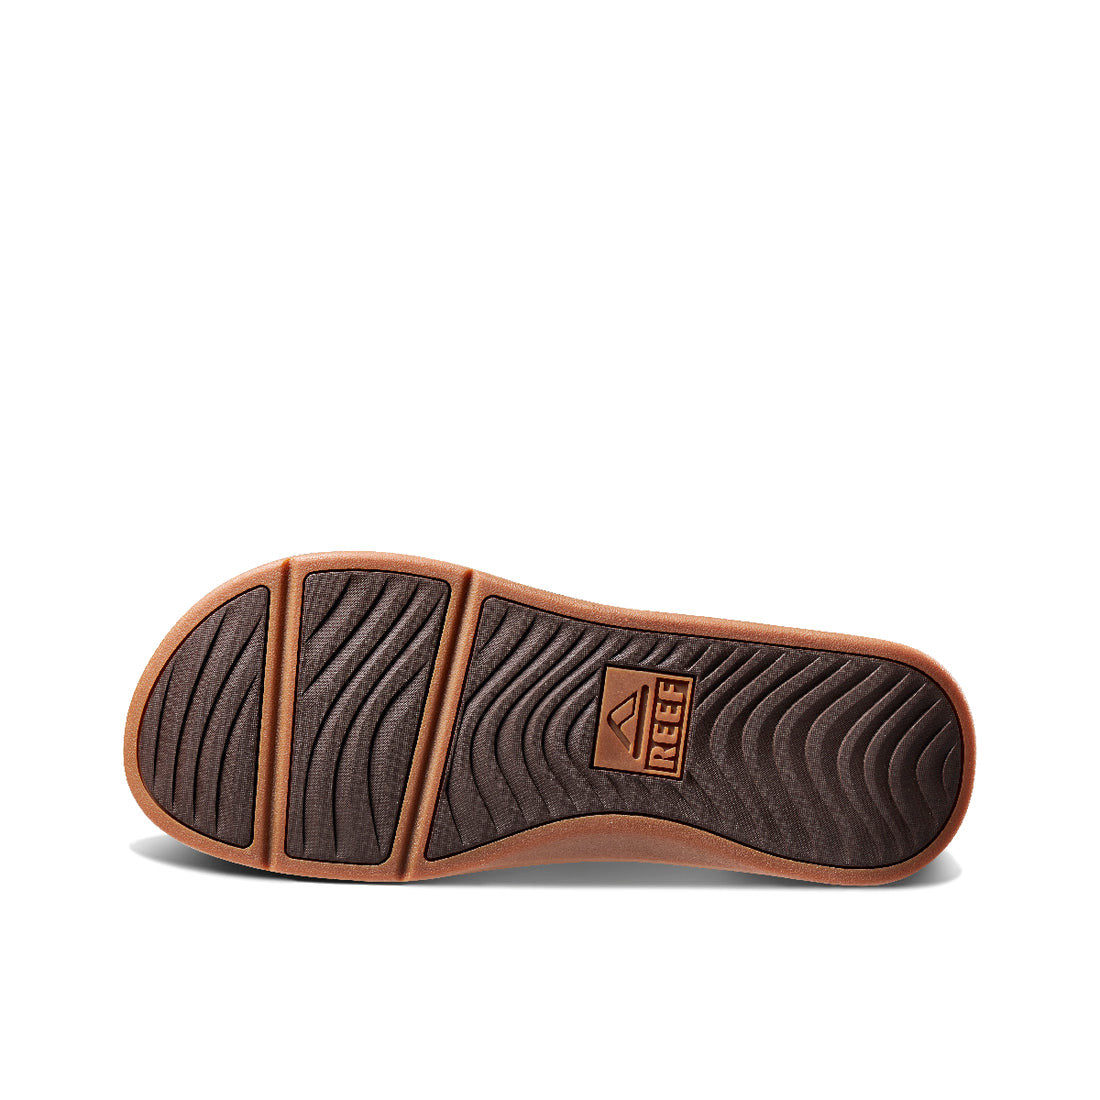 Reef Men's Ortho Seas Sandal - Brown